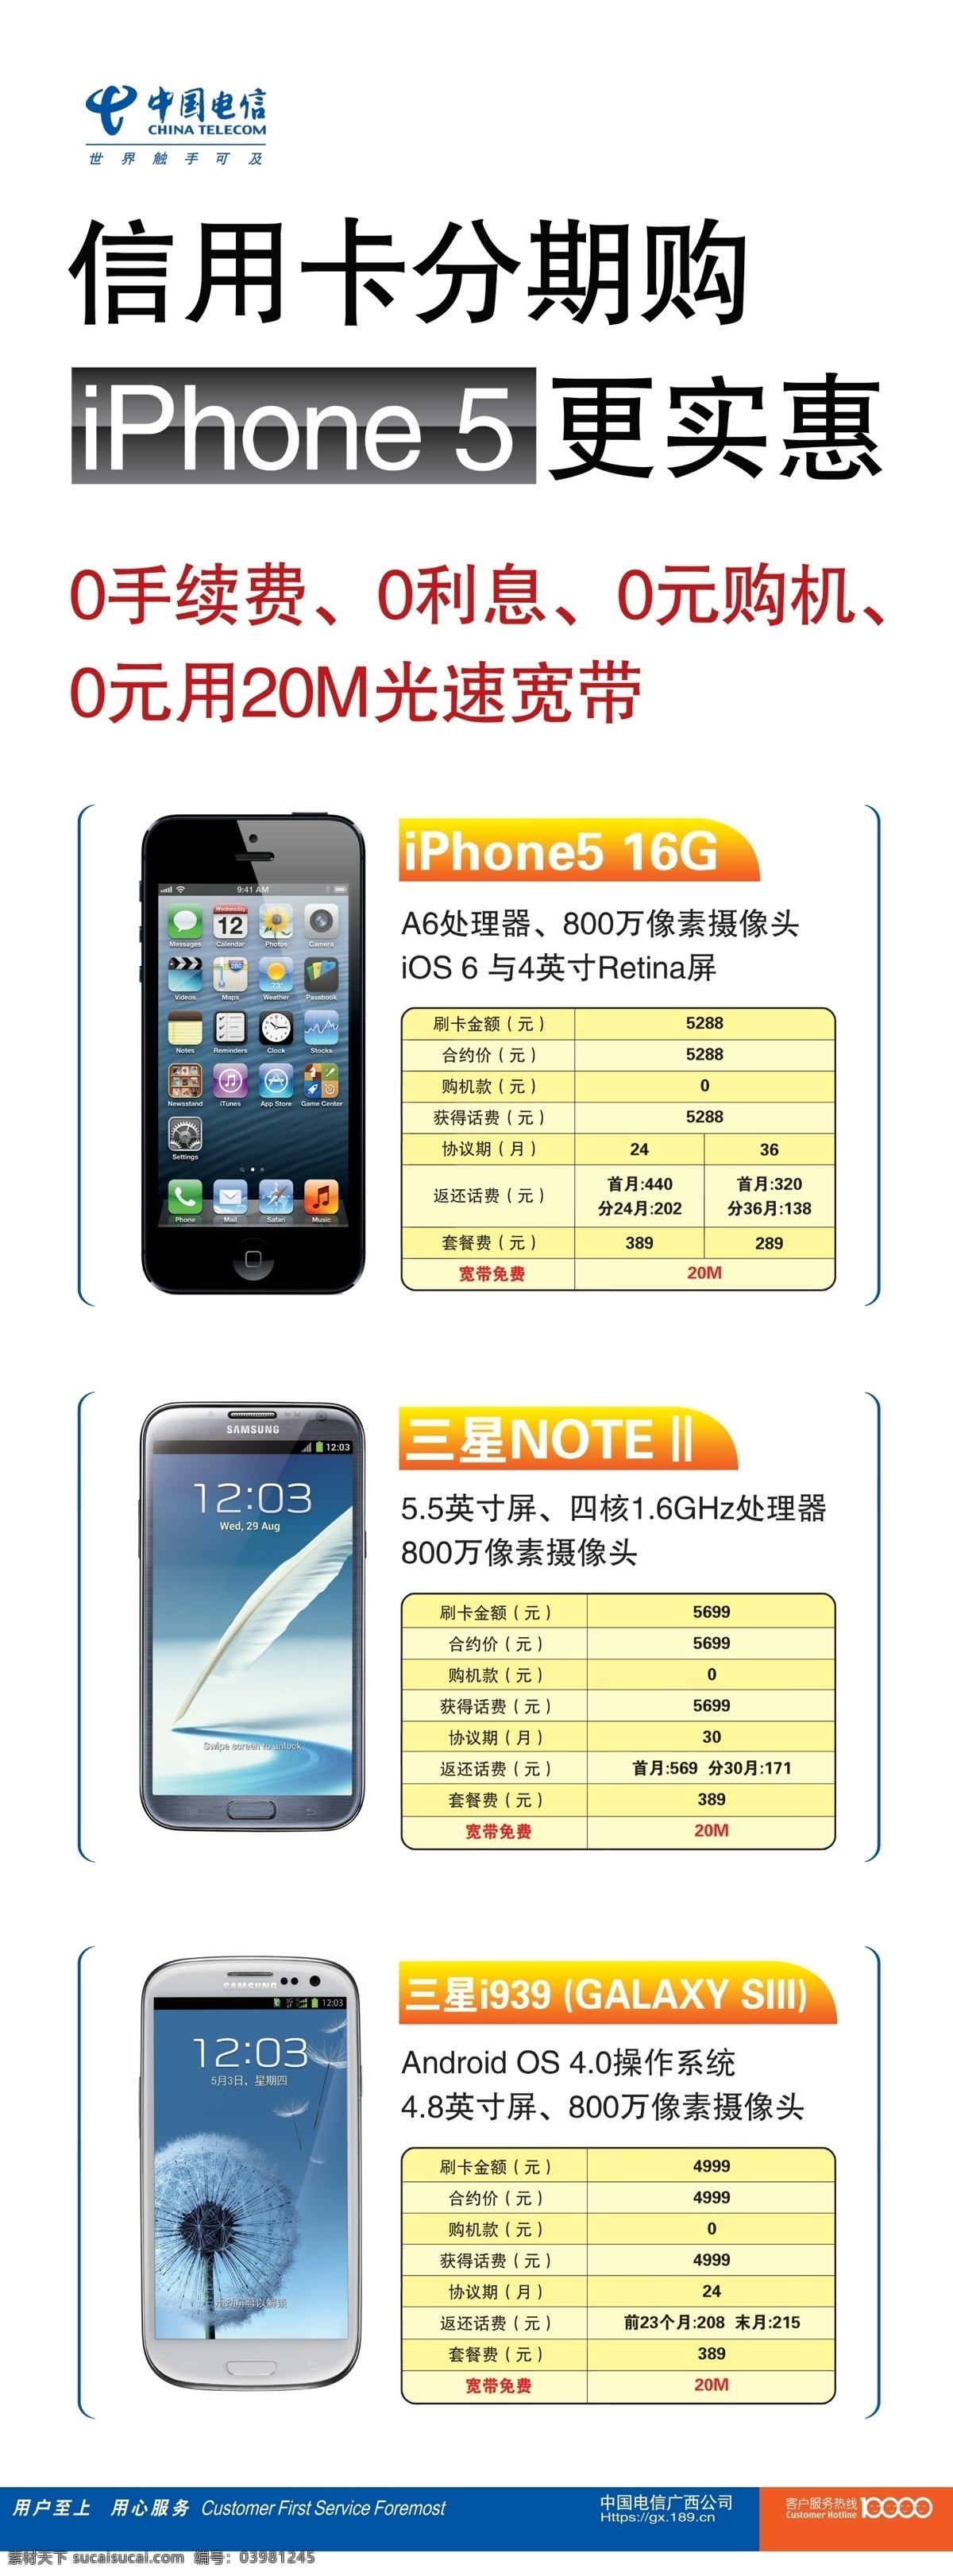 iphone5 电信x展架 电信标志 广告设计模板 苹果手机 三星手机 源文件 中国电信 x 展架 三星i939 三星note 信用卡分期购 海报 其他海报设计